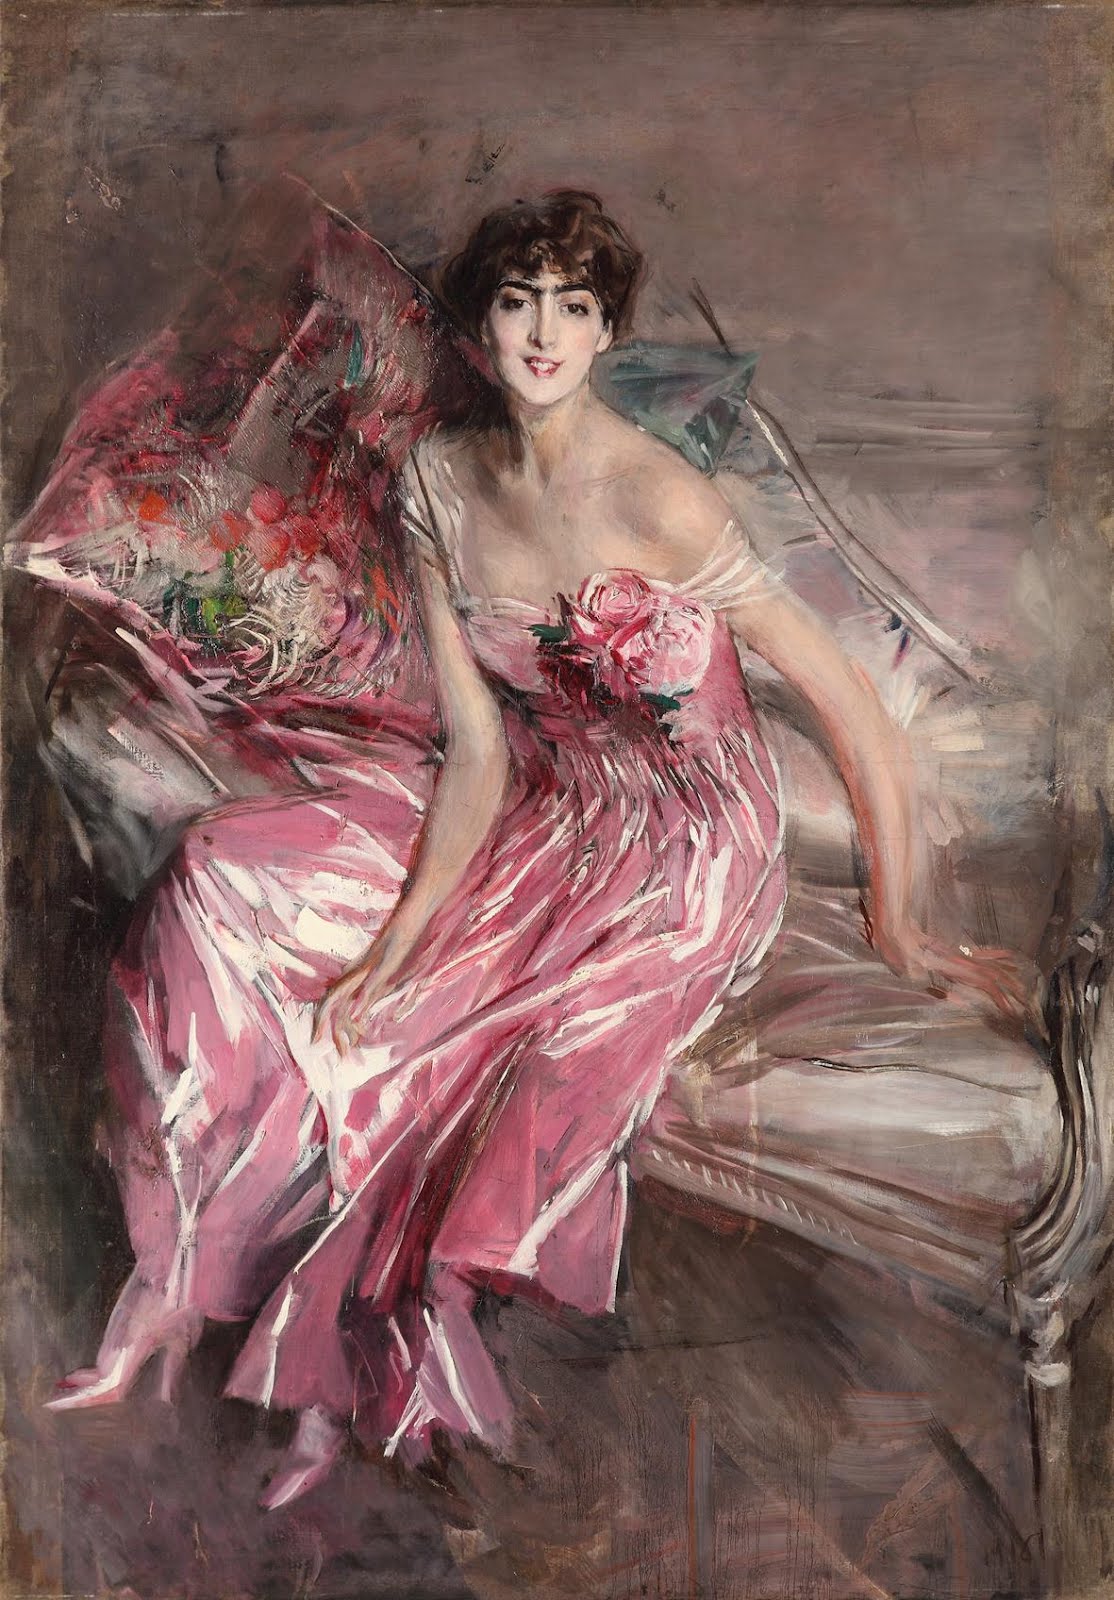 Pani w Różu by Giovanni Boldini - 1916 - 63 x 113 cm 